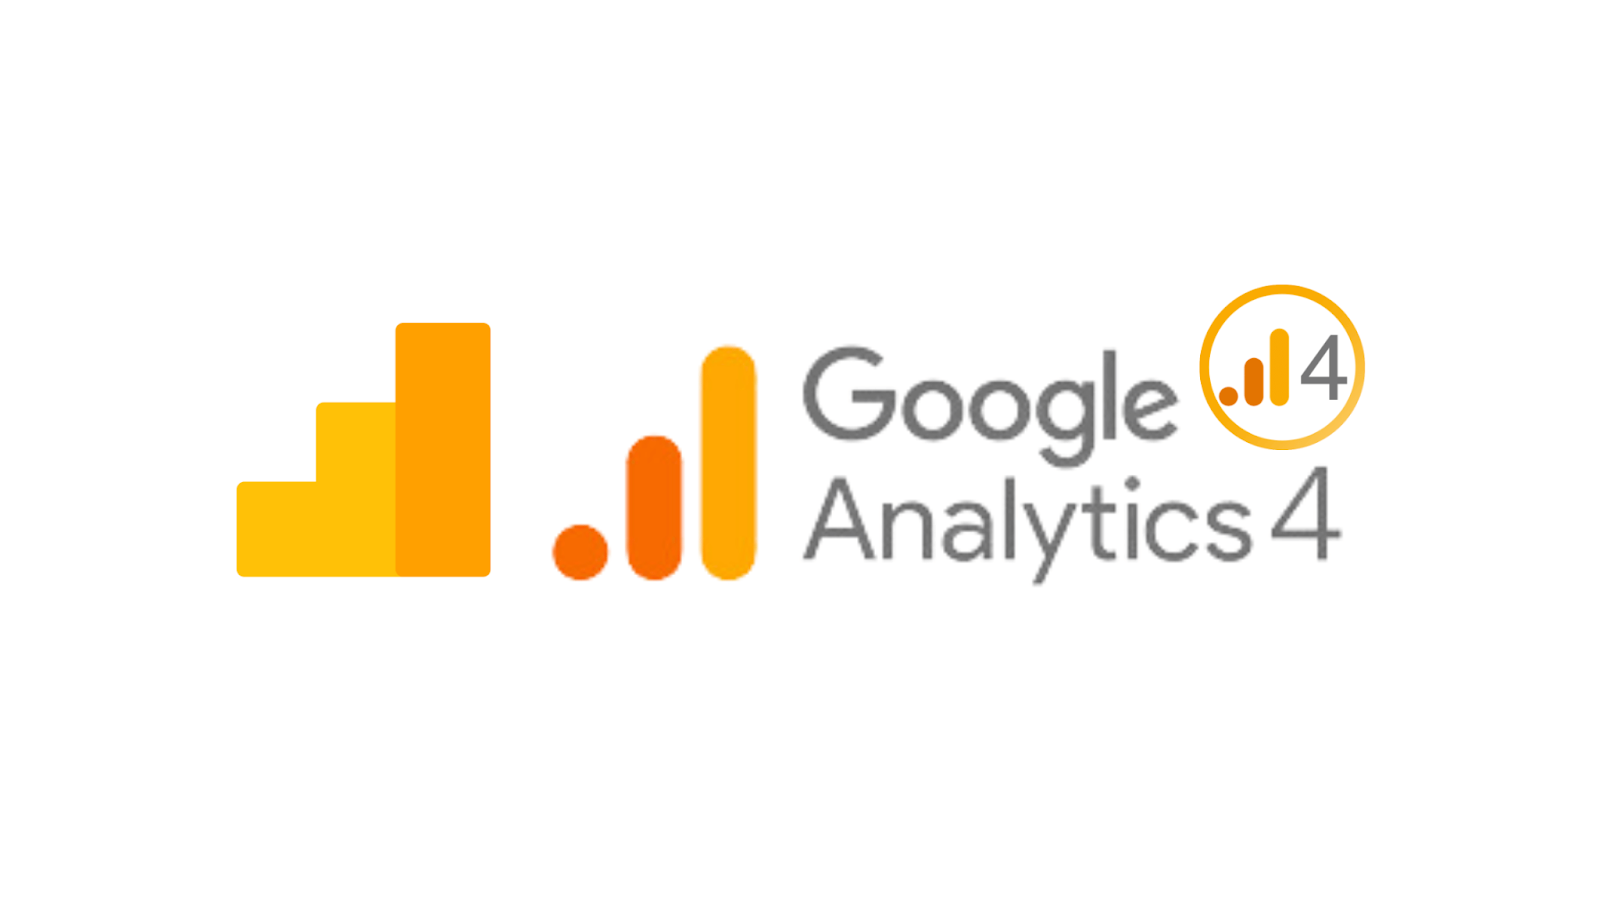 Google Analytics vs Universal Analytics 